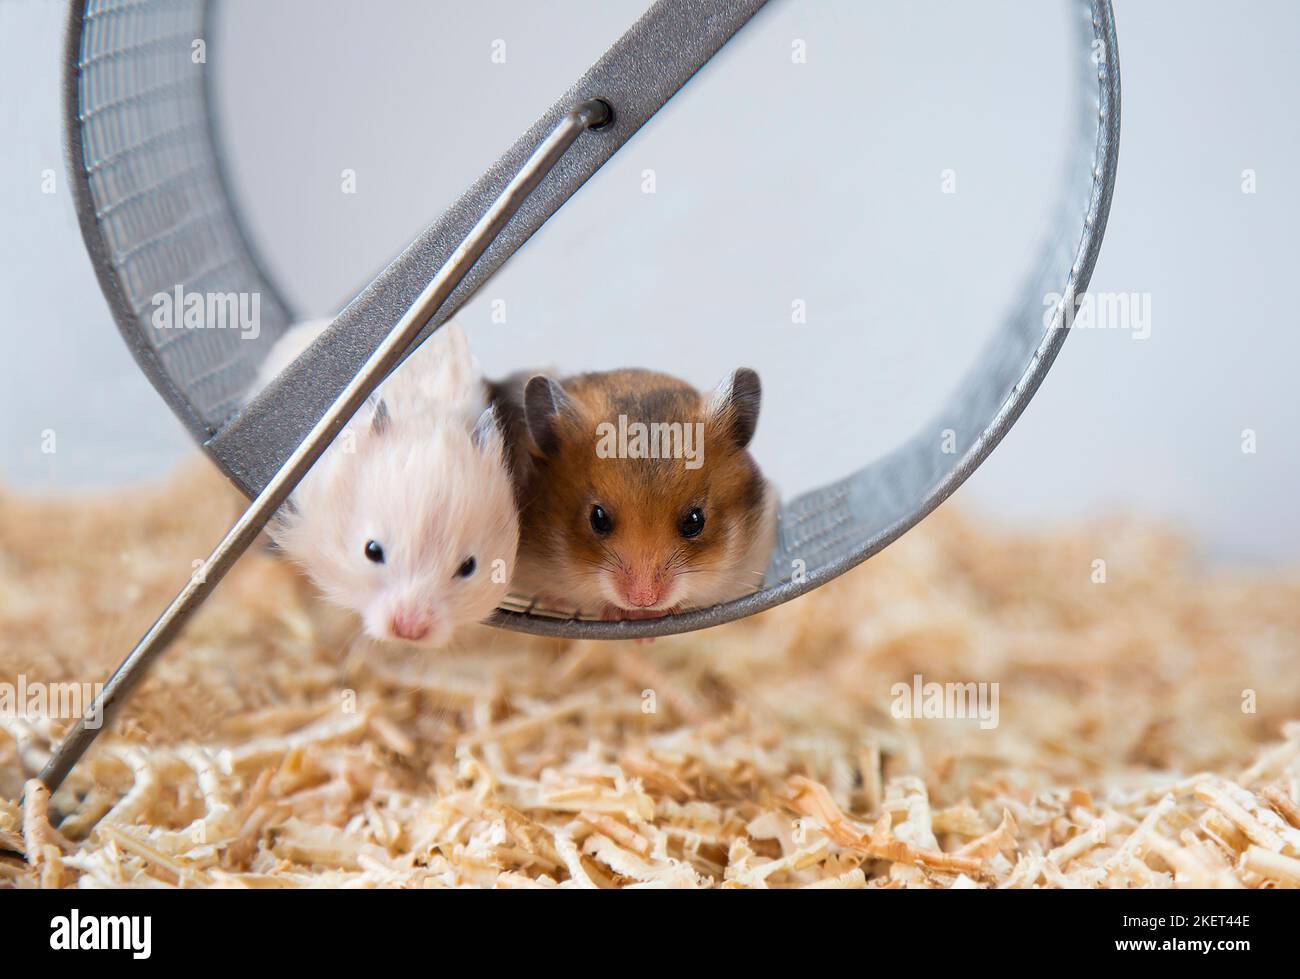 Syrische Hamster sitzen auf einem Rad. Das rote Männchen und das Pfirsichweibchen sind Nagetiere. Nahaufnahme. Maulkörbe von kleinen bunten Hamstern die Nachkommen von Mäusen. Haustiere. Stockfoto